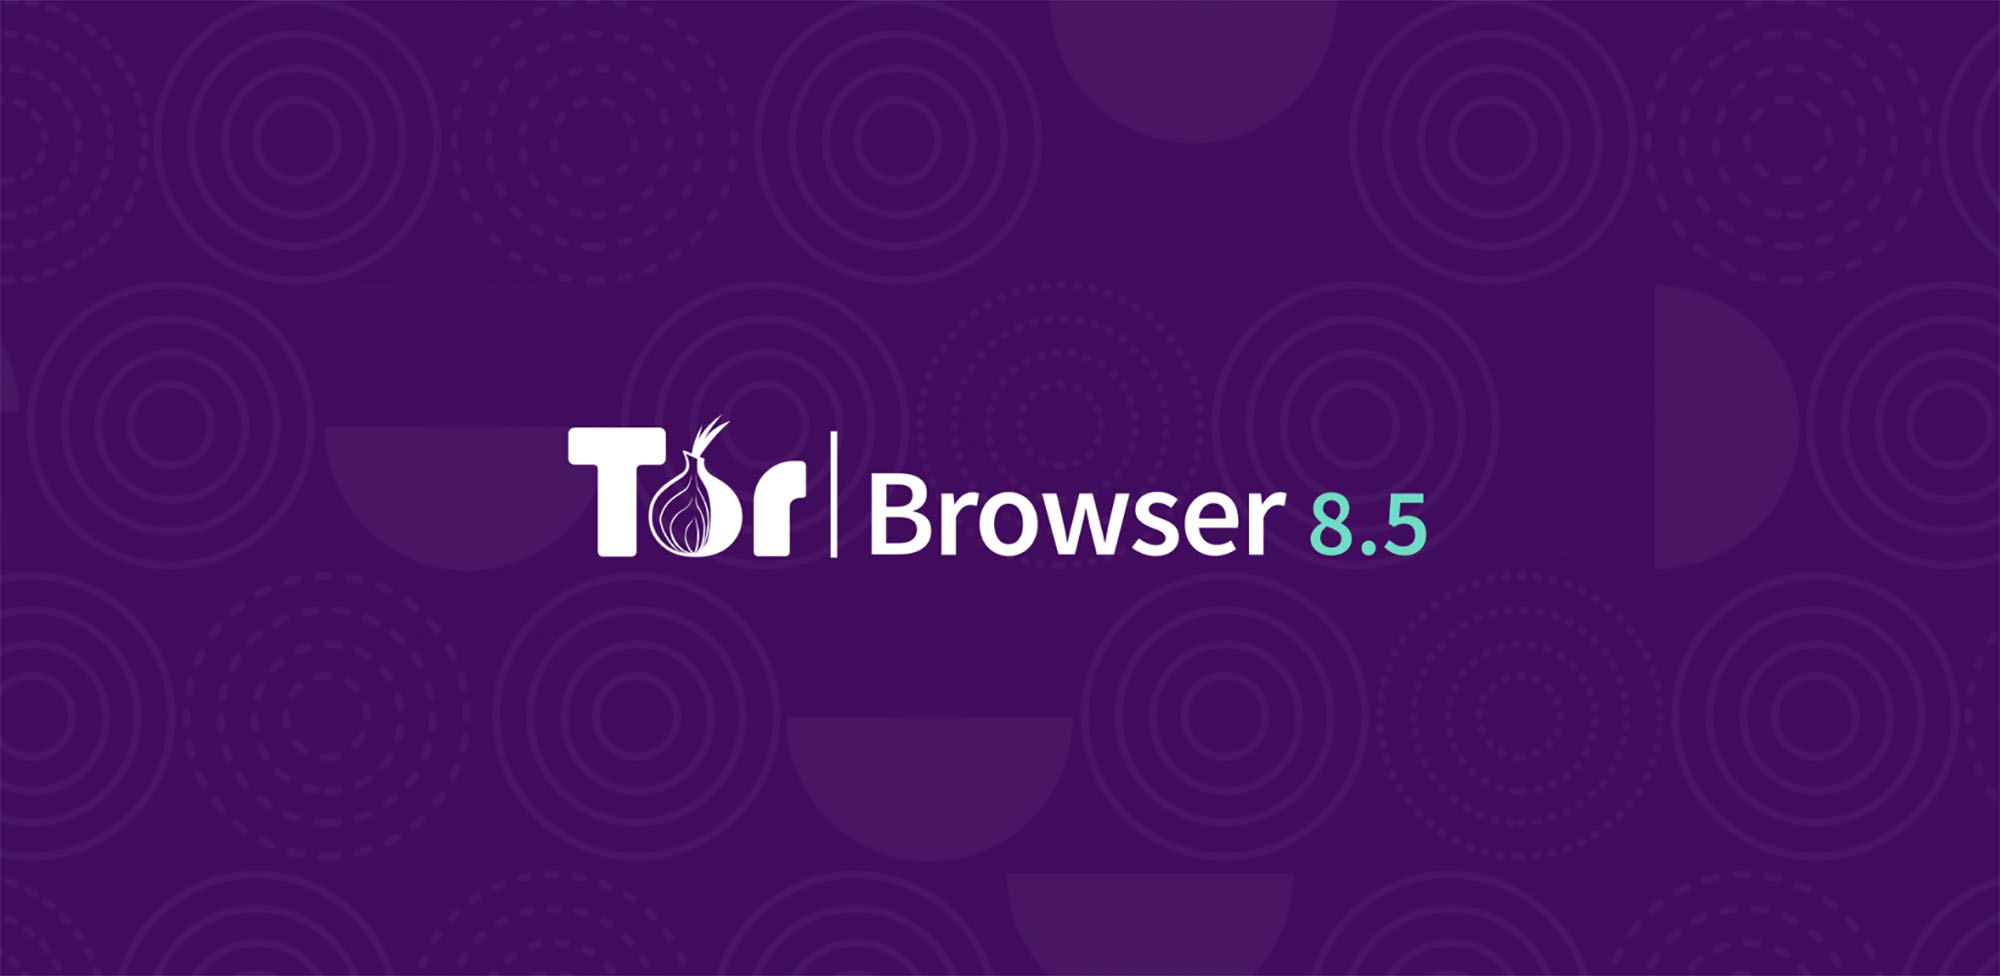 Tor browser запретили mega скачать тор браузер бесплатно на русском и без регистрации mega